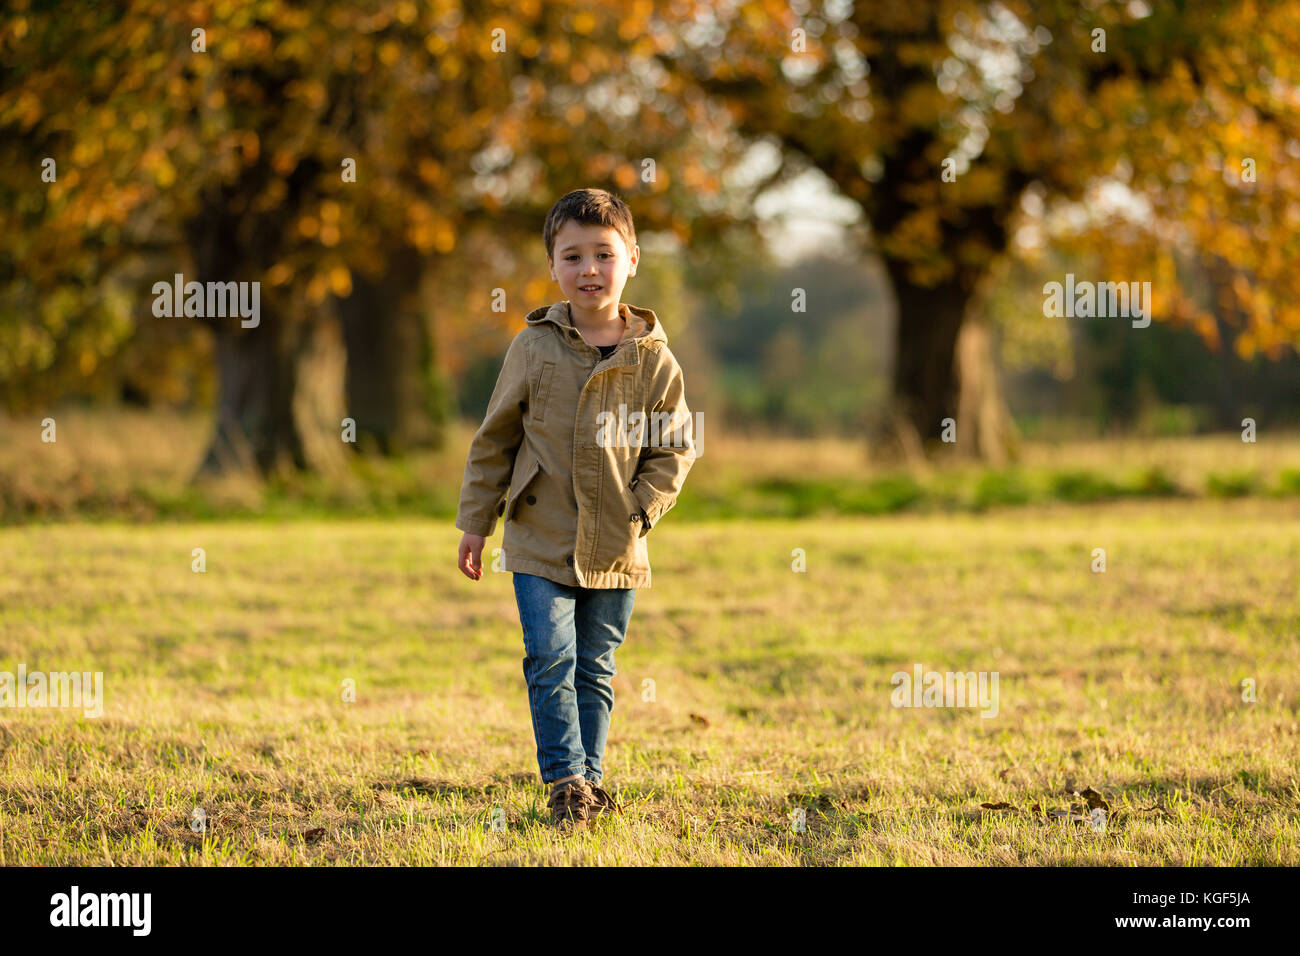 Chico camina en castletown Park disfruta de hermoso clima de noviembre con los árboles caducifolios derramando sus hojas en ricos colores otoñales. celbridge Foto de stock